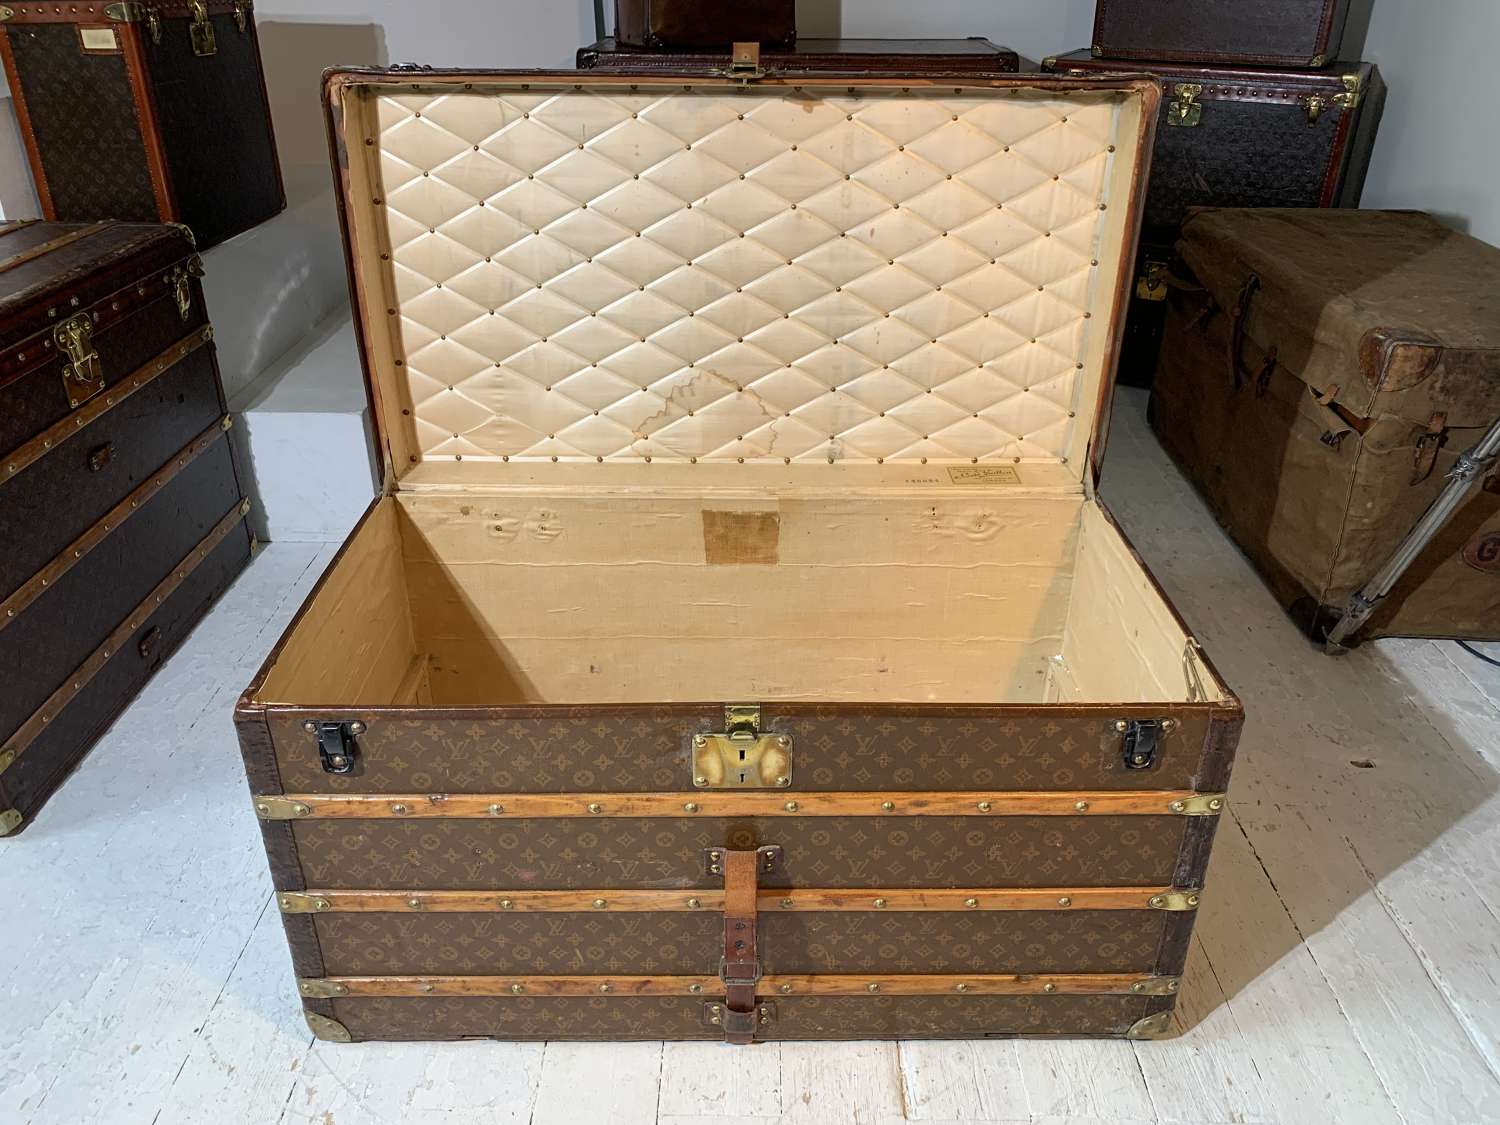 A Louis Vuitton Malle Courier trunk circa 1896